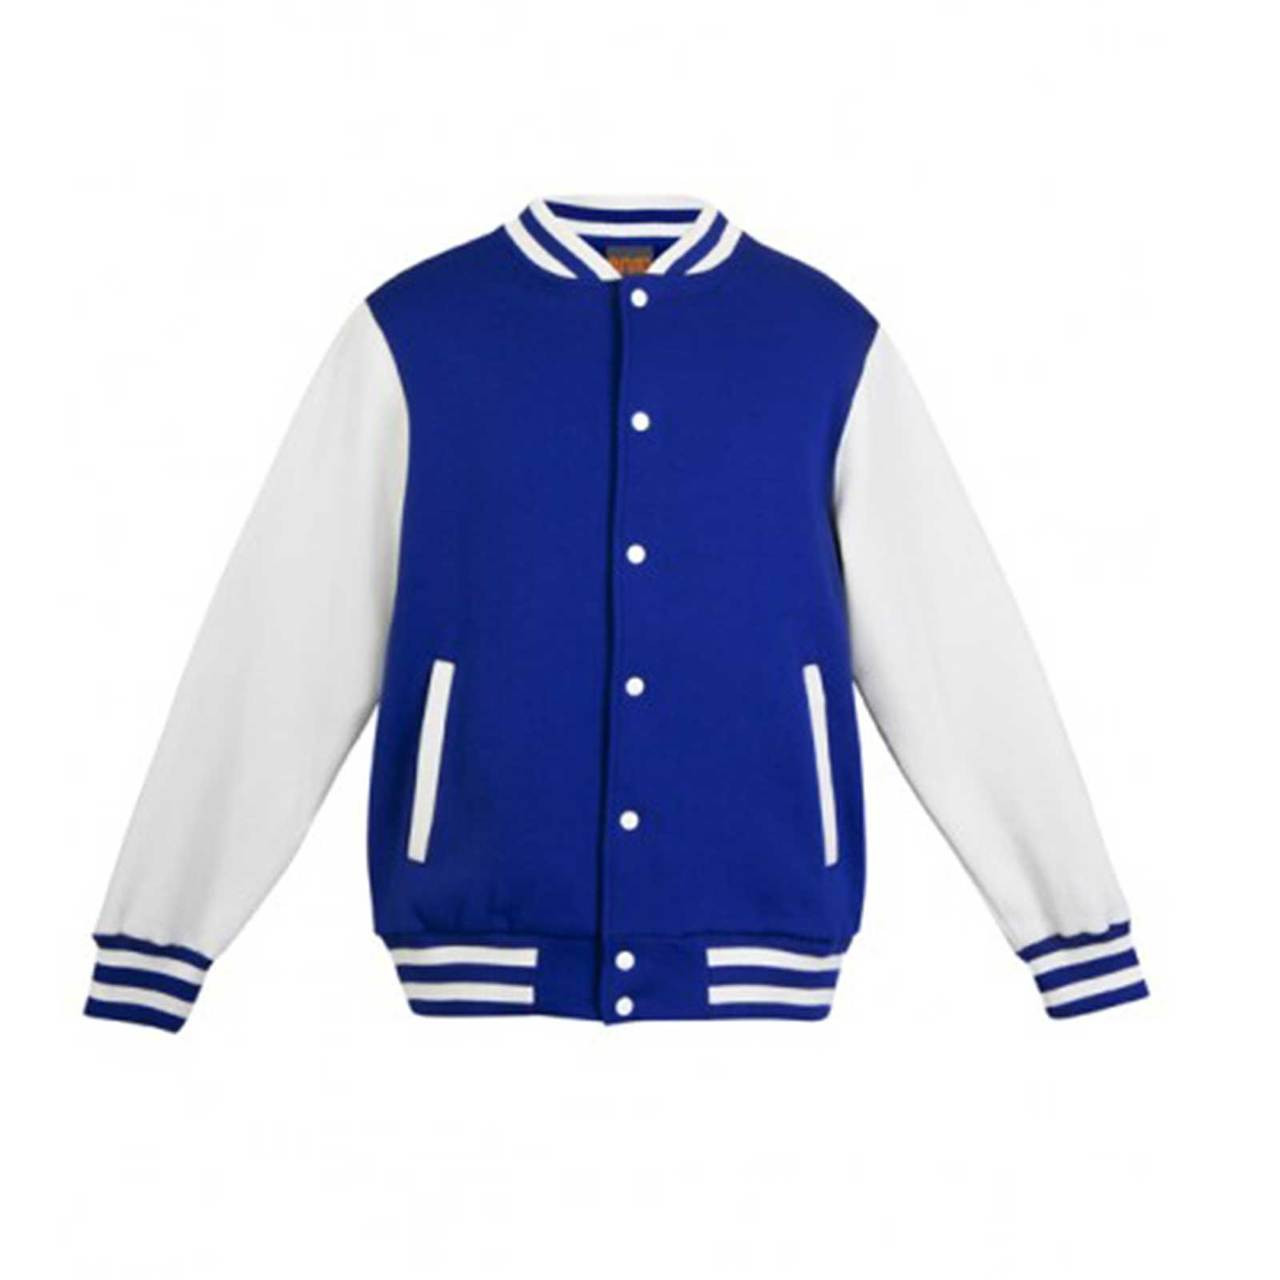 Plain Fleecy Unisex Varsity Jacket | Shop Sale Blank Clothing Wholesale